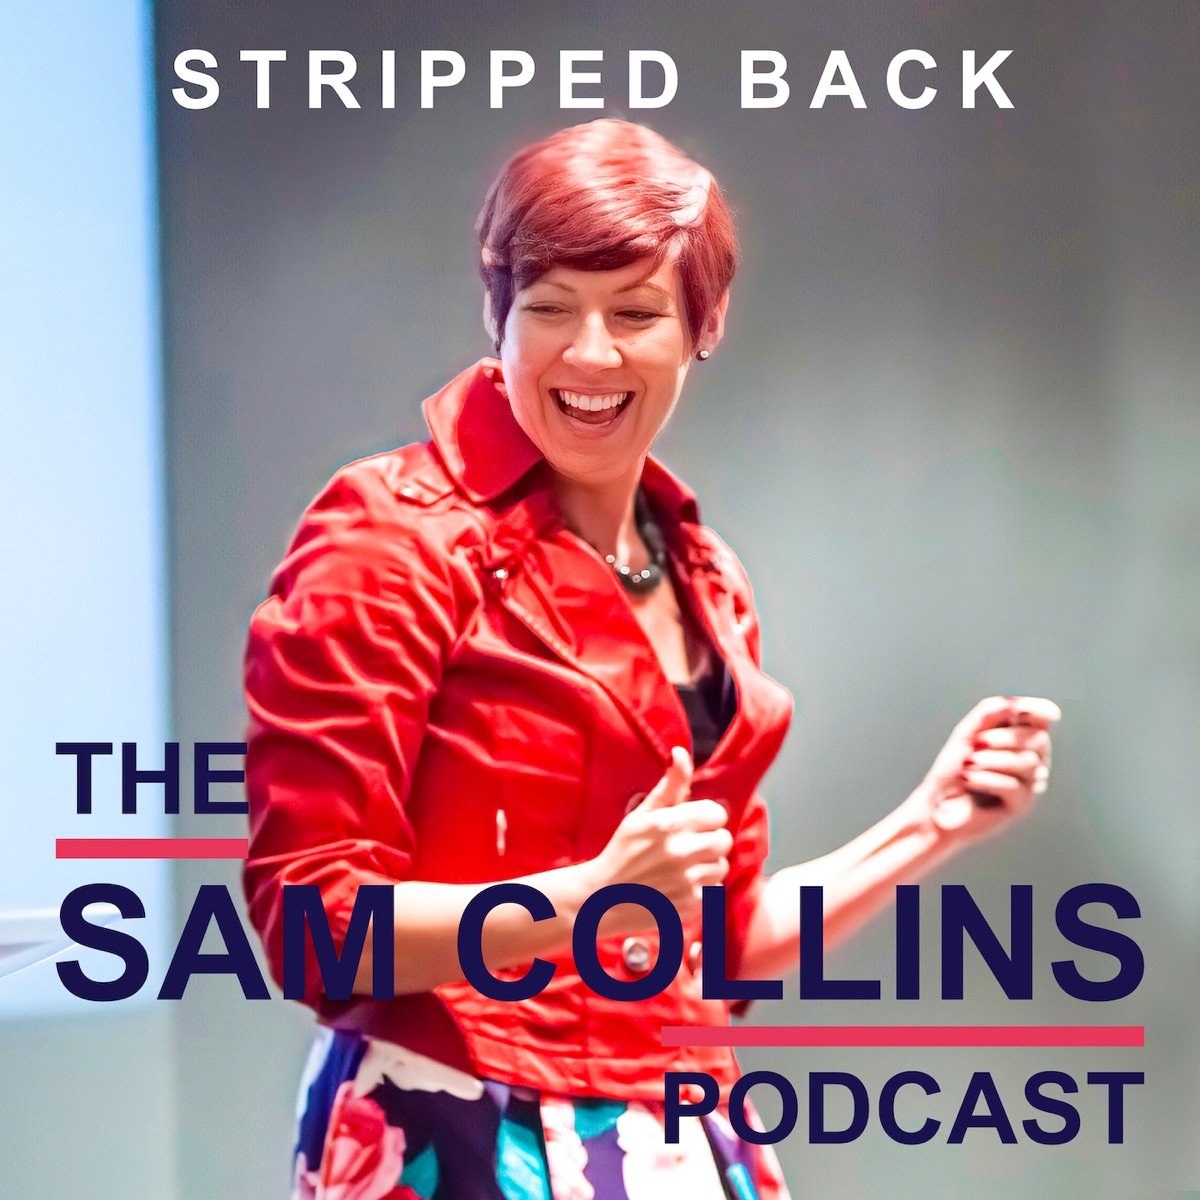 Dr Sam Collins Podcast: I'm Listening with Karen Sherman